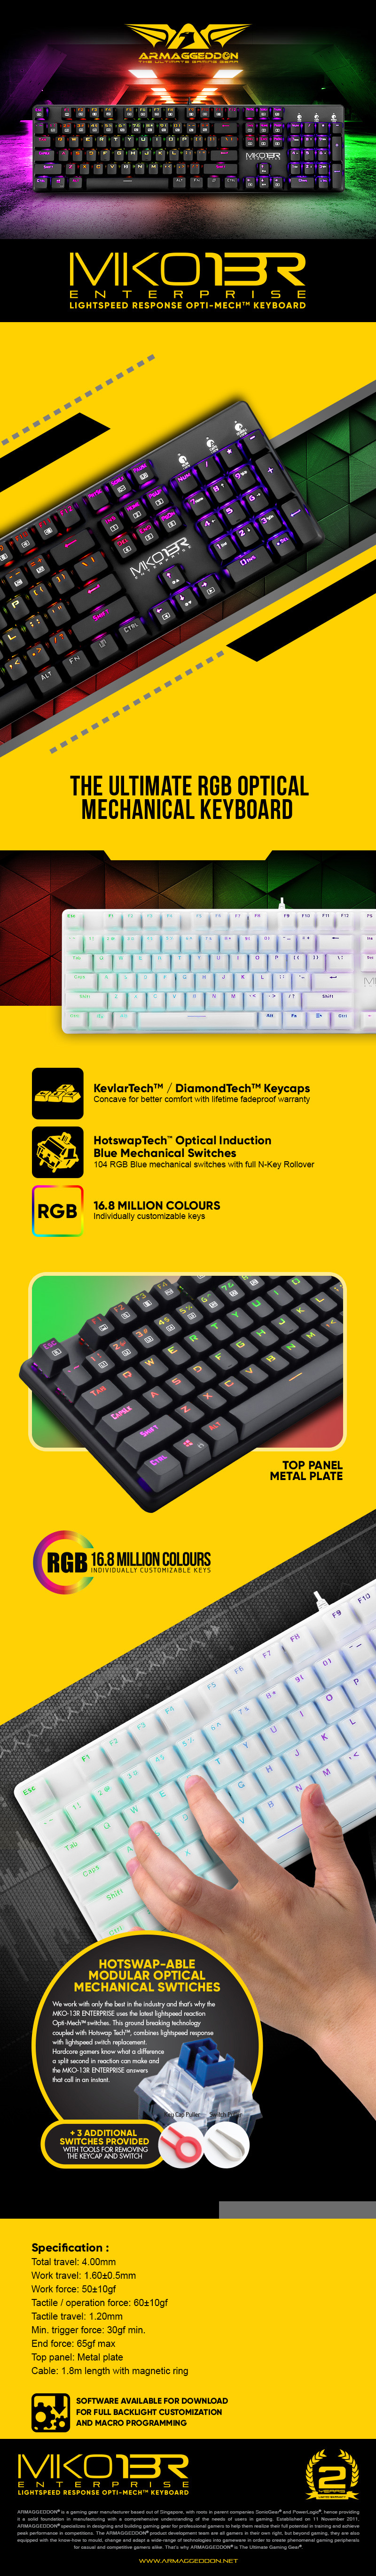 Keyboards-ARMAGGEDDON-MKO-13R-Optical-RGB-Mechanical-Keyboard-Blue-Swtich-Black-2